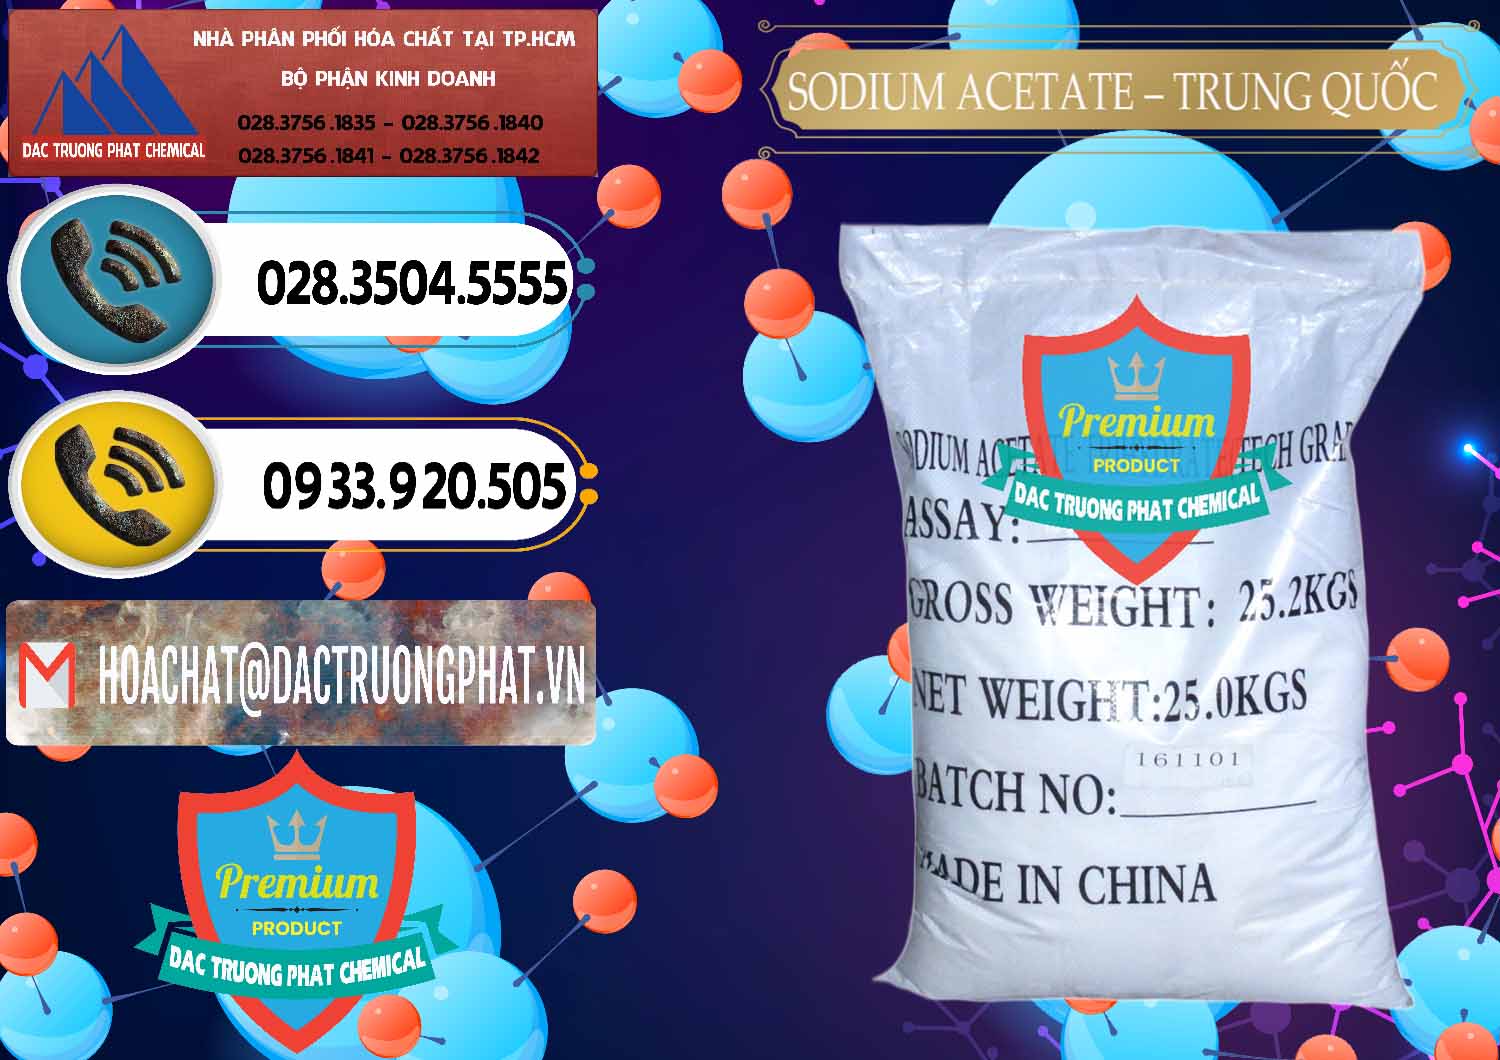 Nơi kinh doanh & bán Sodium Acetate - Natri Acetate Trung Quốc China - 0134 - Công ty chuyên nhập khẩu ( phân phối ) hóa chất tại TP.HCM - hoachatdetnhuom.vn